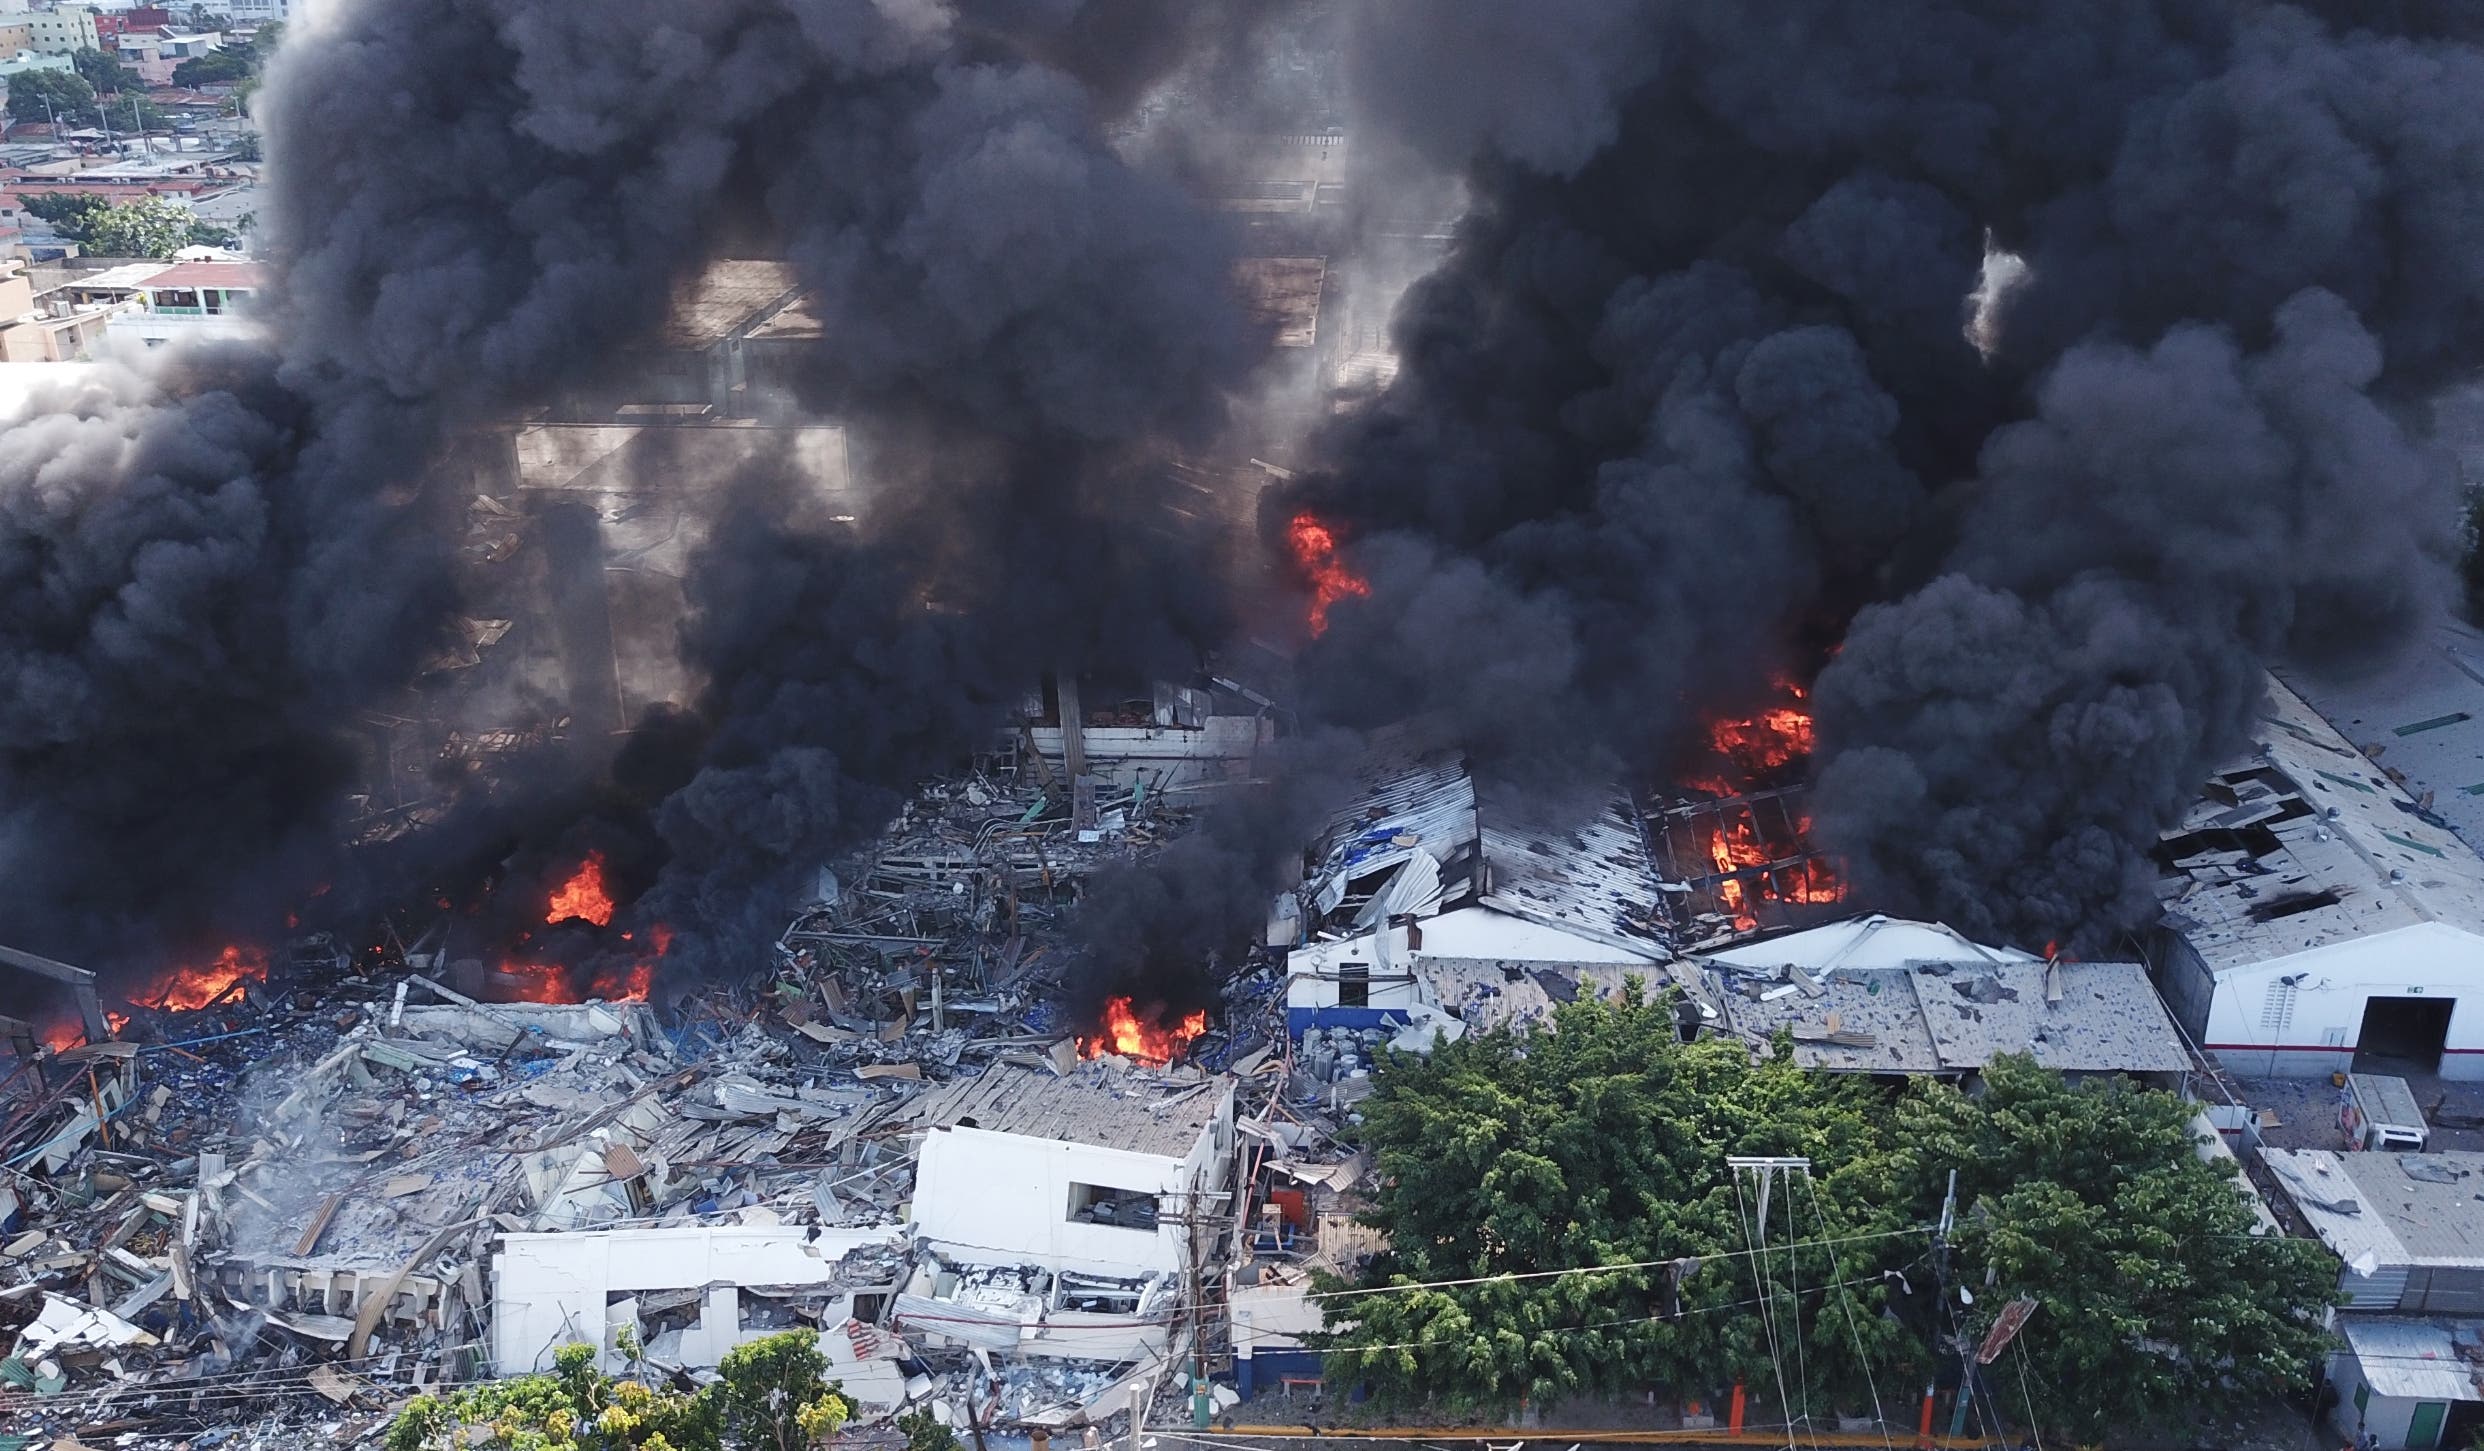 Una panorÃ¡mica de las llamas que destruyeron las instalaciones de la empresa, tras la explosiÃ³n que provocÃ³ alarma en los alrededores de Villas AgrÃ­colas. Jovanny Kranwinkel